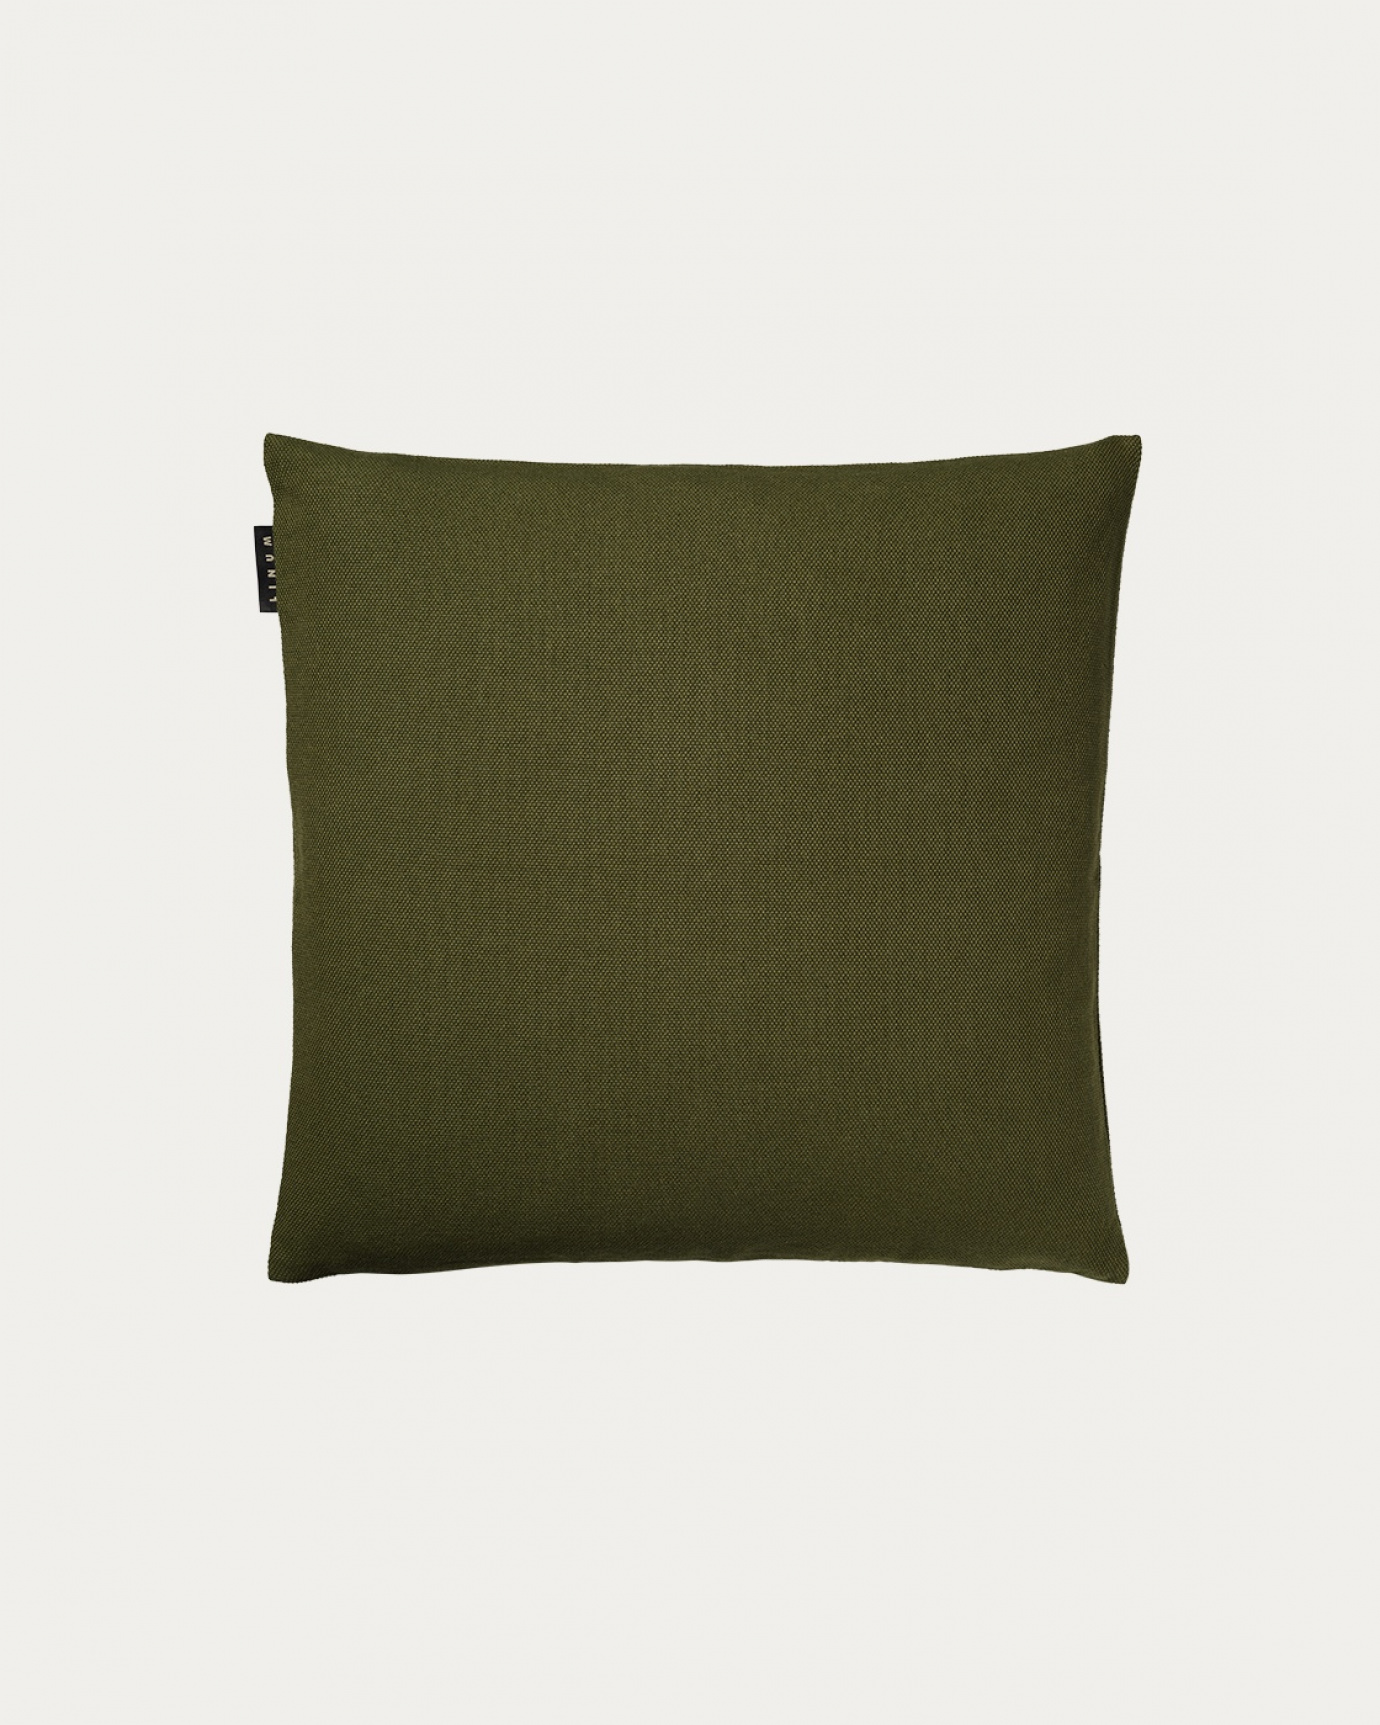 Produktbild dunkles olivgrün PEPPER Kissenhülle aus weicher Baumwolle von LINUM DESIGN. Einfach zu waschen und langlebig für Generationen. Größe 40x40 cm.